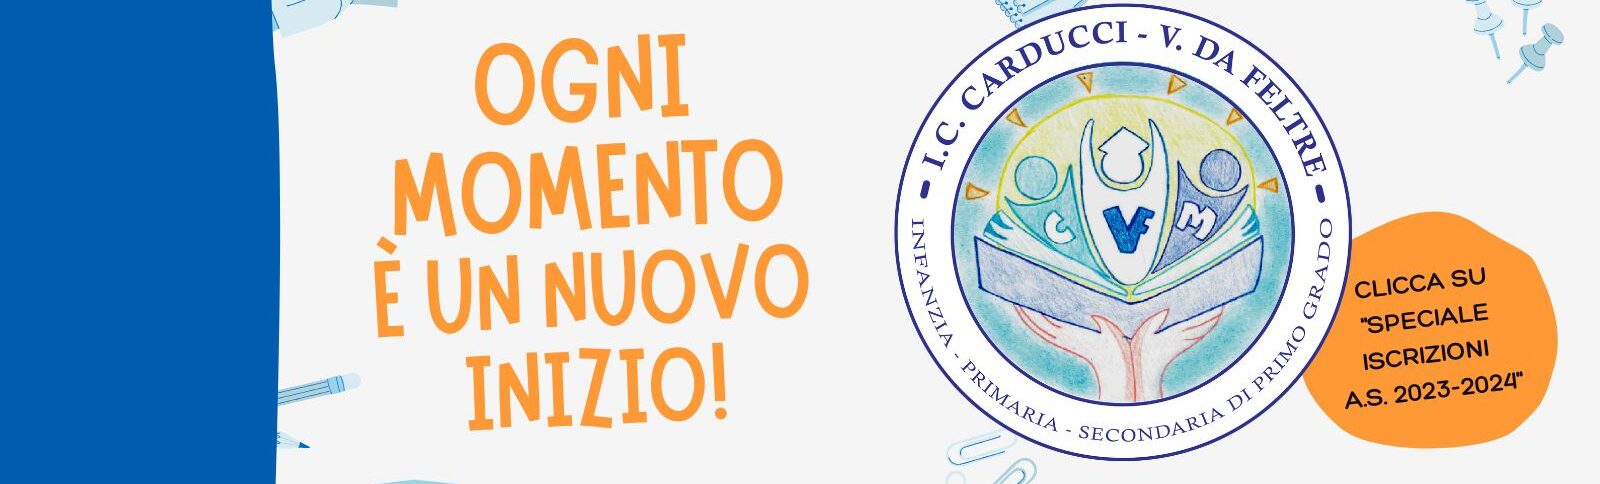 I.C. “Carducci – V. da Feltre”: celebrata la Giornata per i Diritti dell’Infanzia e dell’Adolescenza